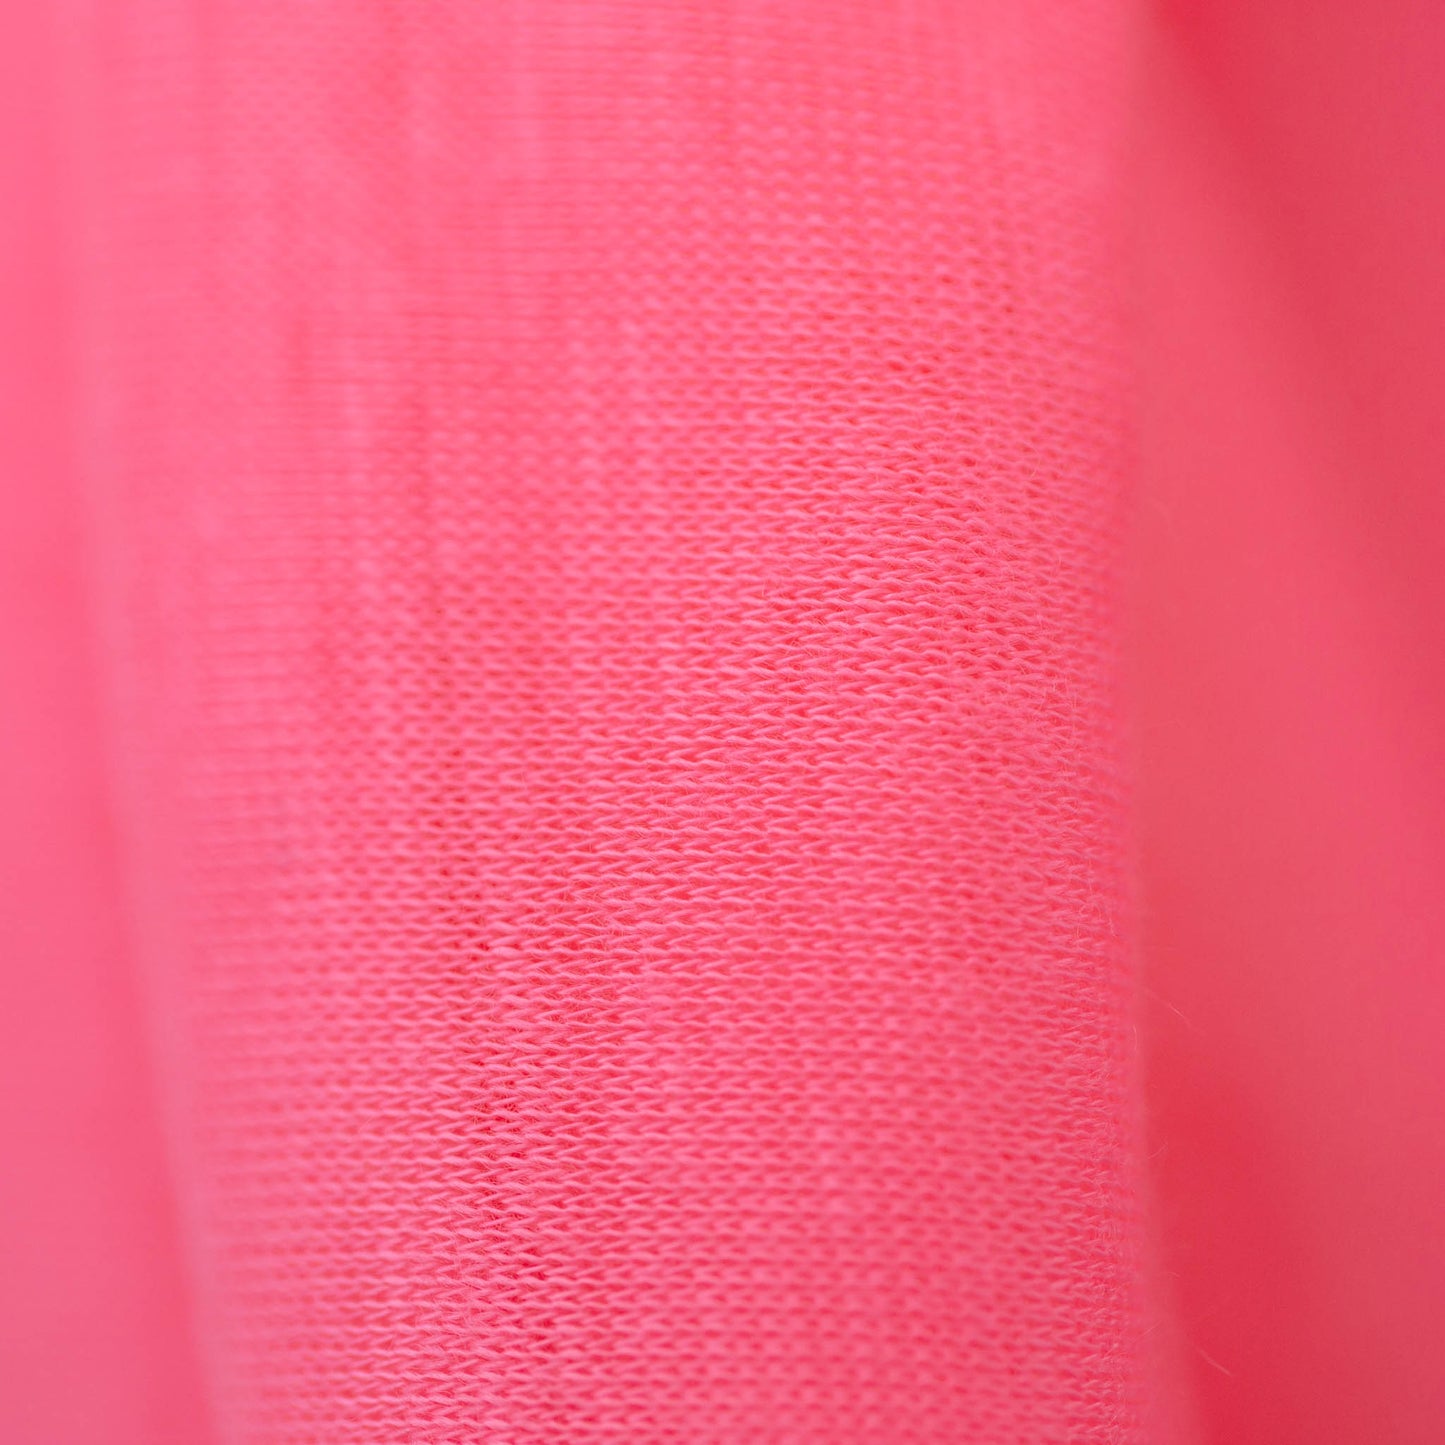 Eșarfă damă rotundă, colecția sweet life, 75 x 85 cm - Roz Neon